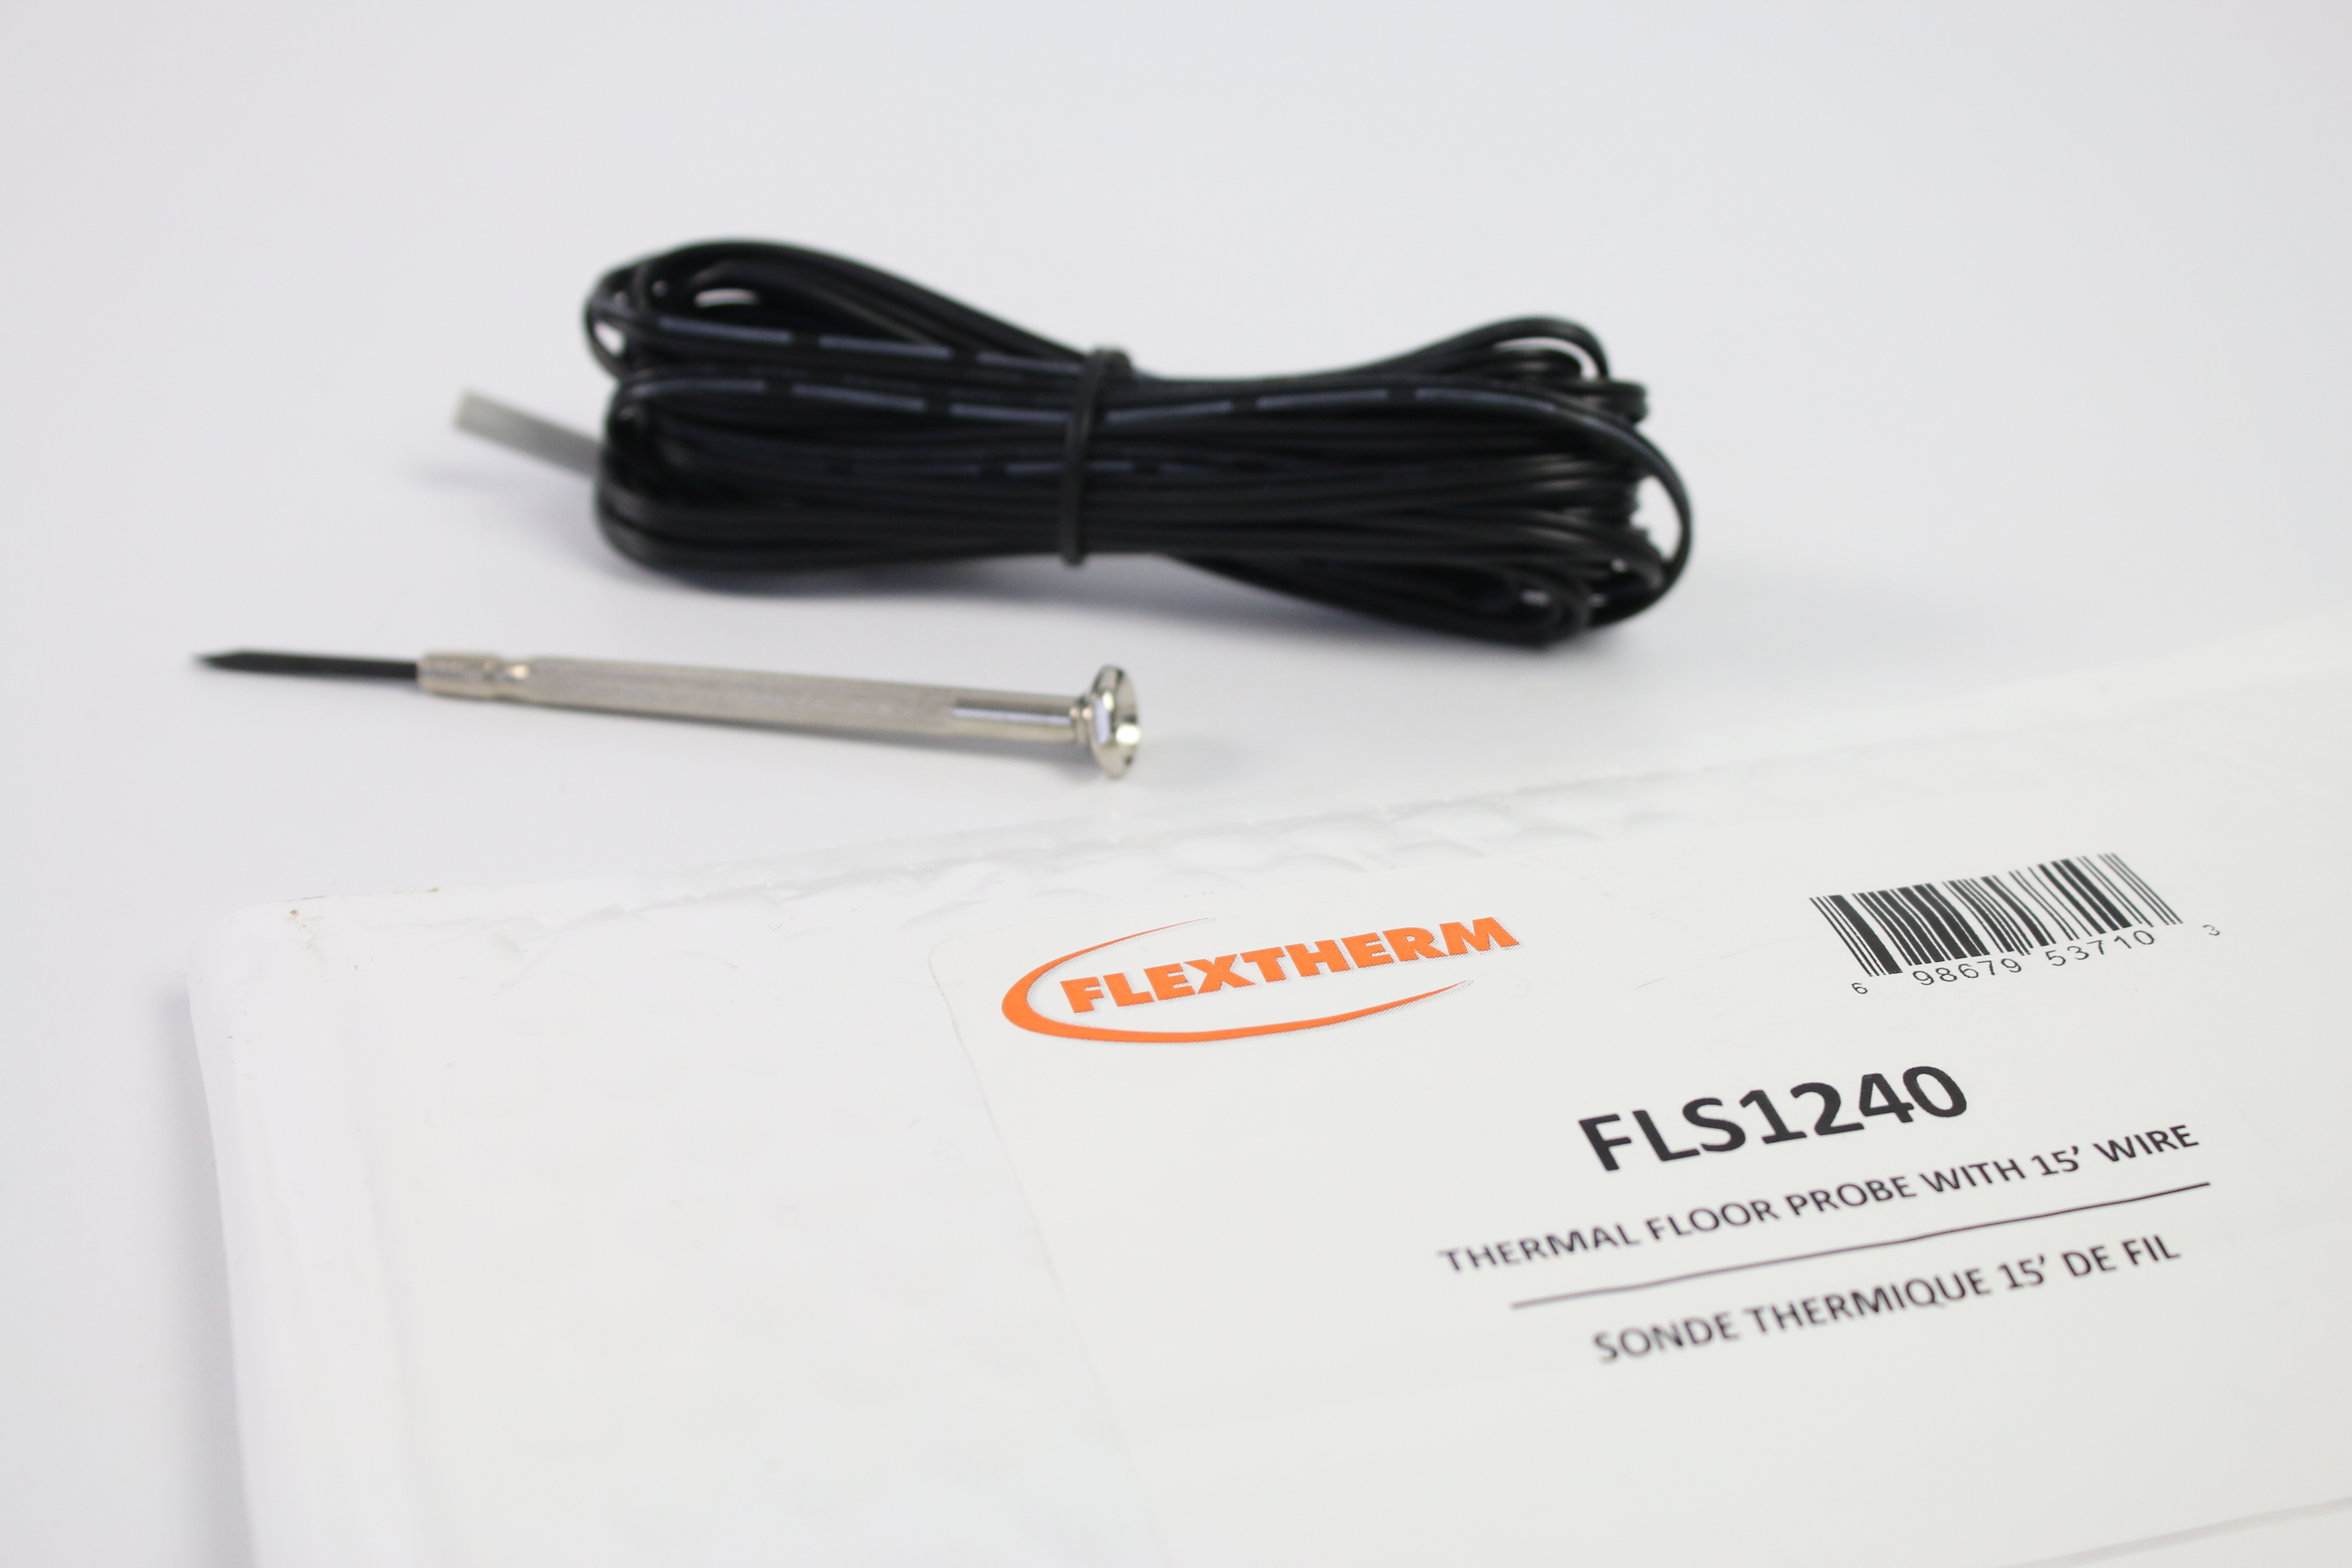 Flextherm (FLS1240)